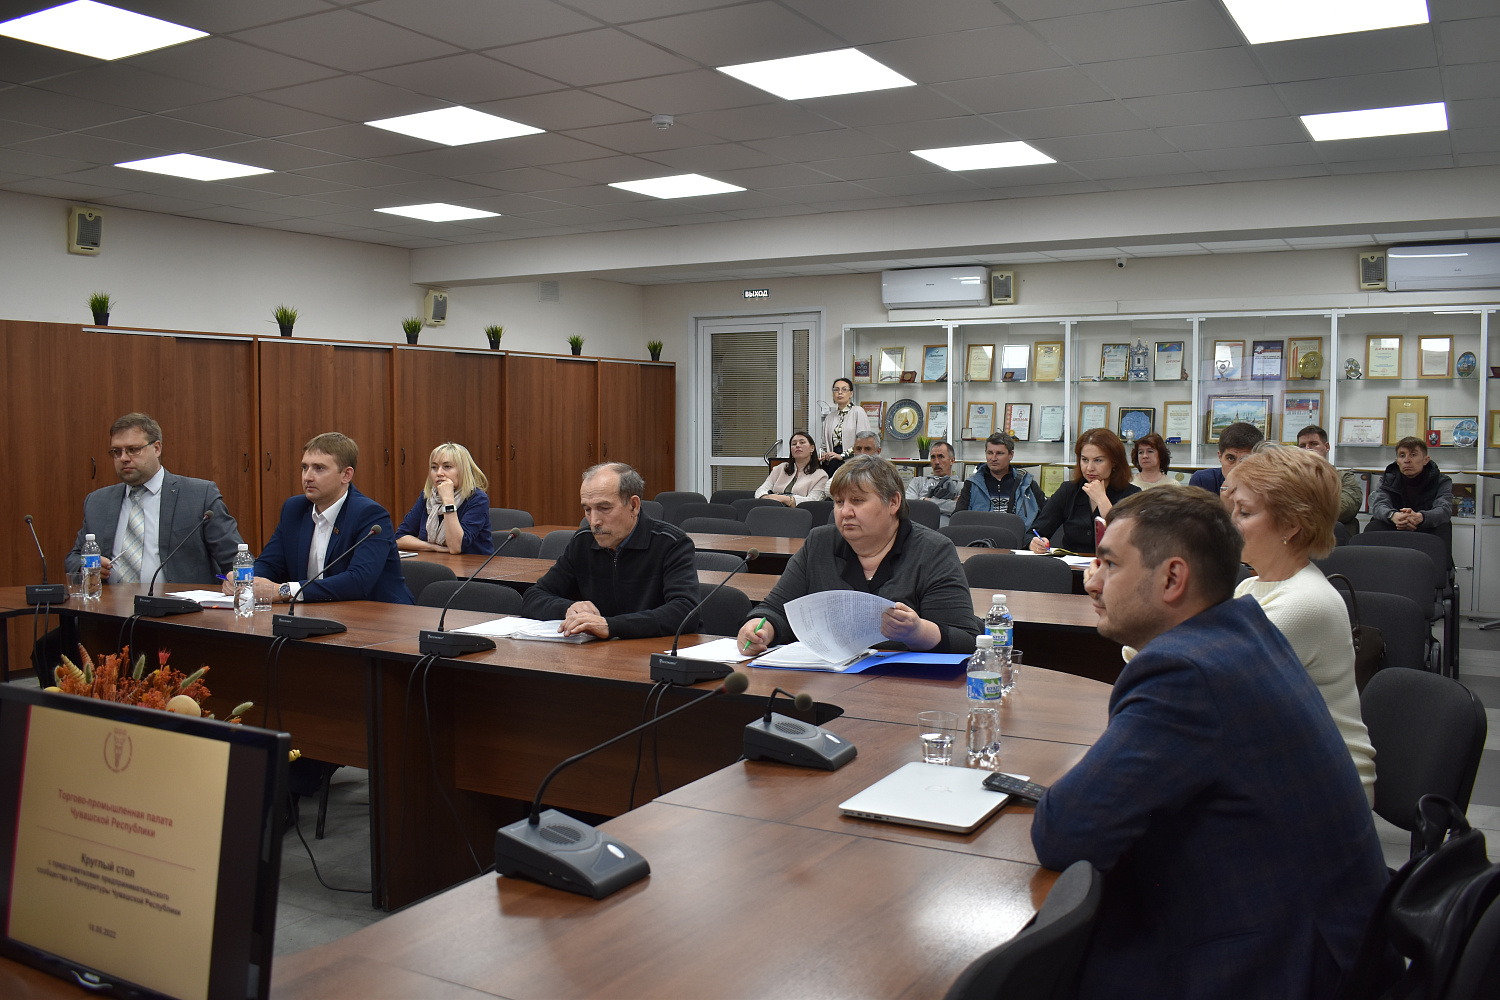 Круглый стол с участием Уполномоченного по защите прав предпринимателей в Чувашской Республике и представителей Прокуратуры Чувашской Республики.